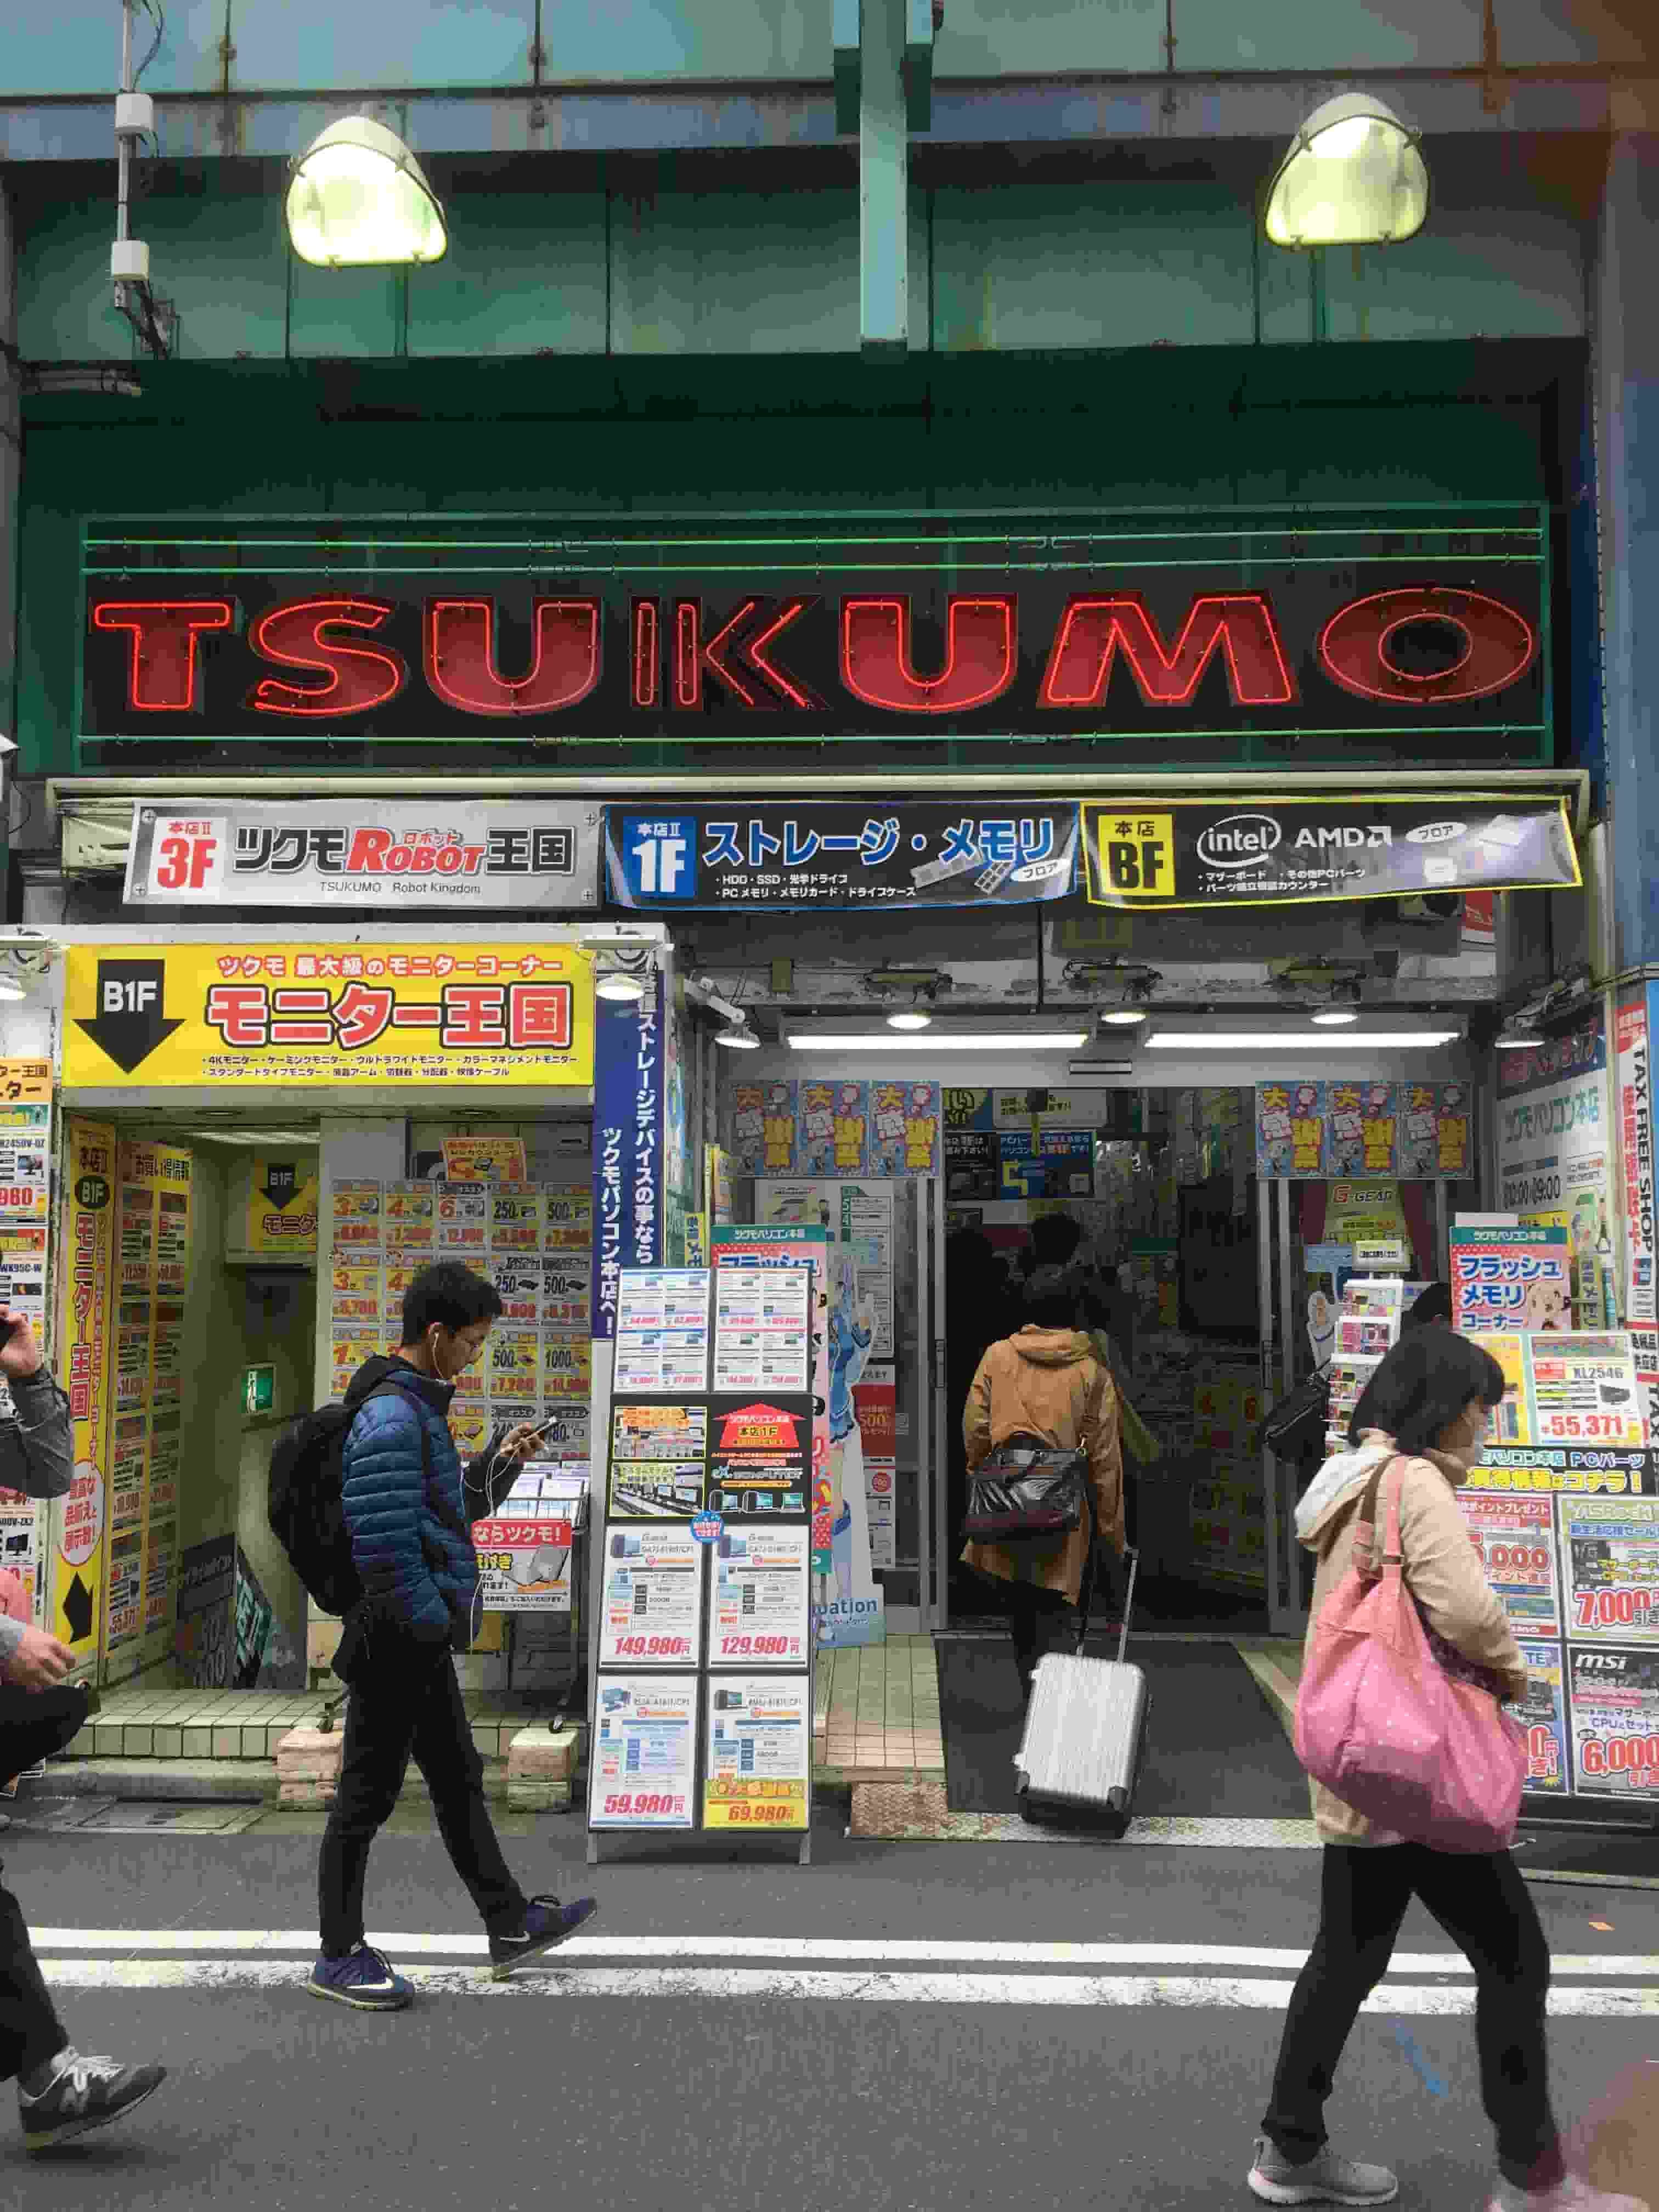 Tsukumo Computer Shop - Hokkaido A4JP Travel Guide